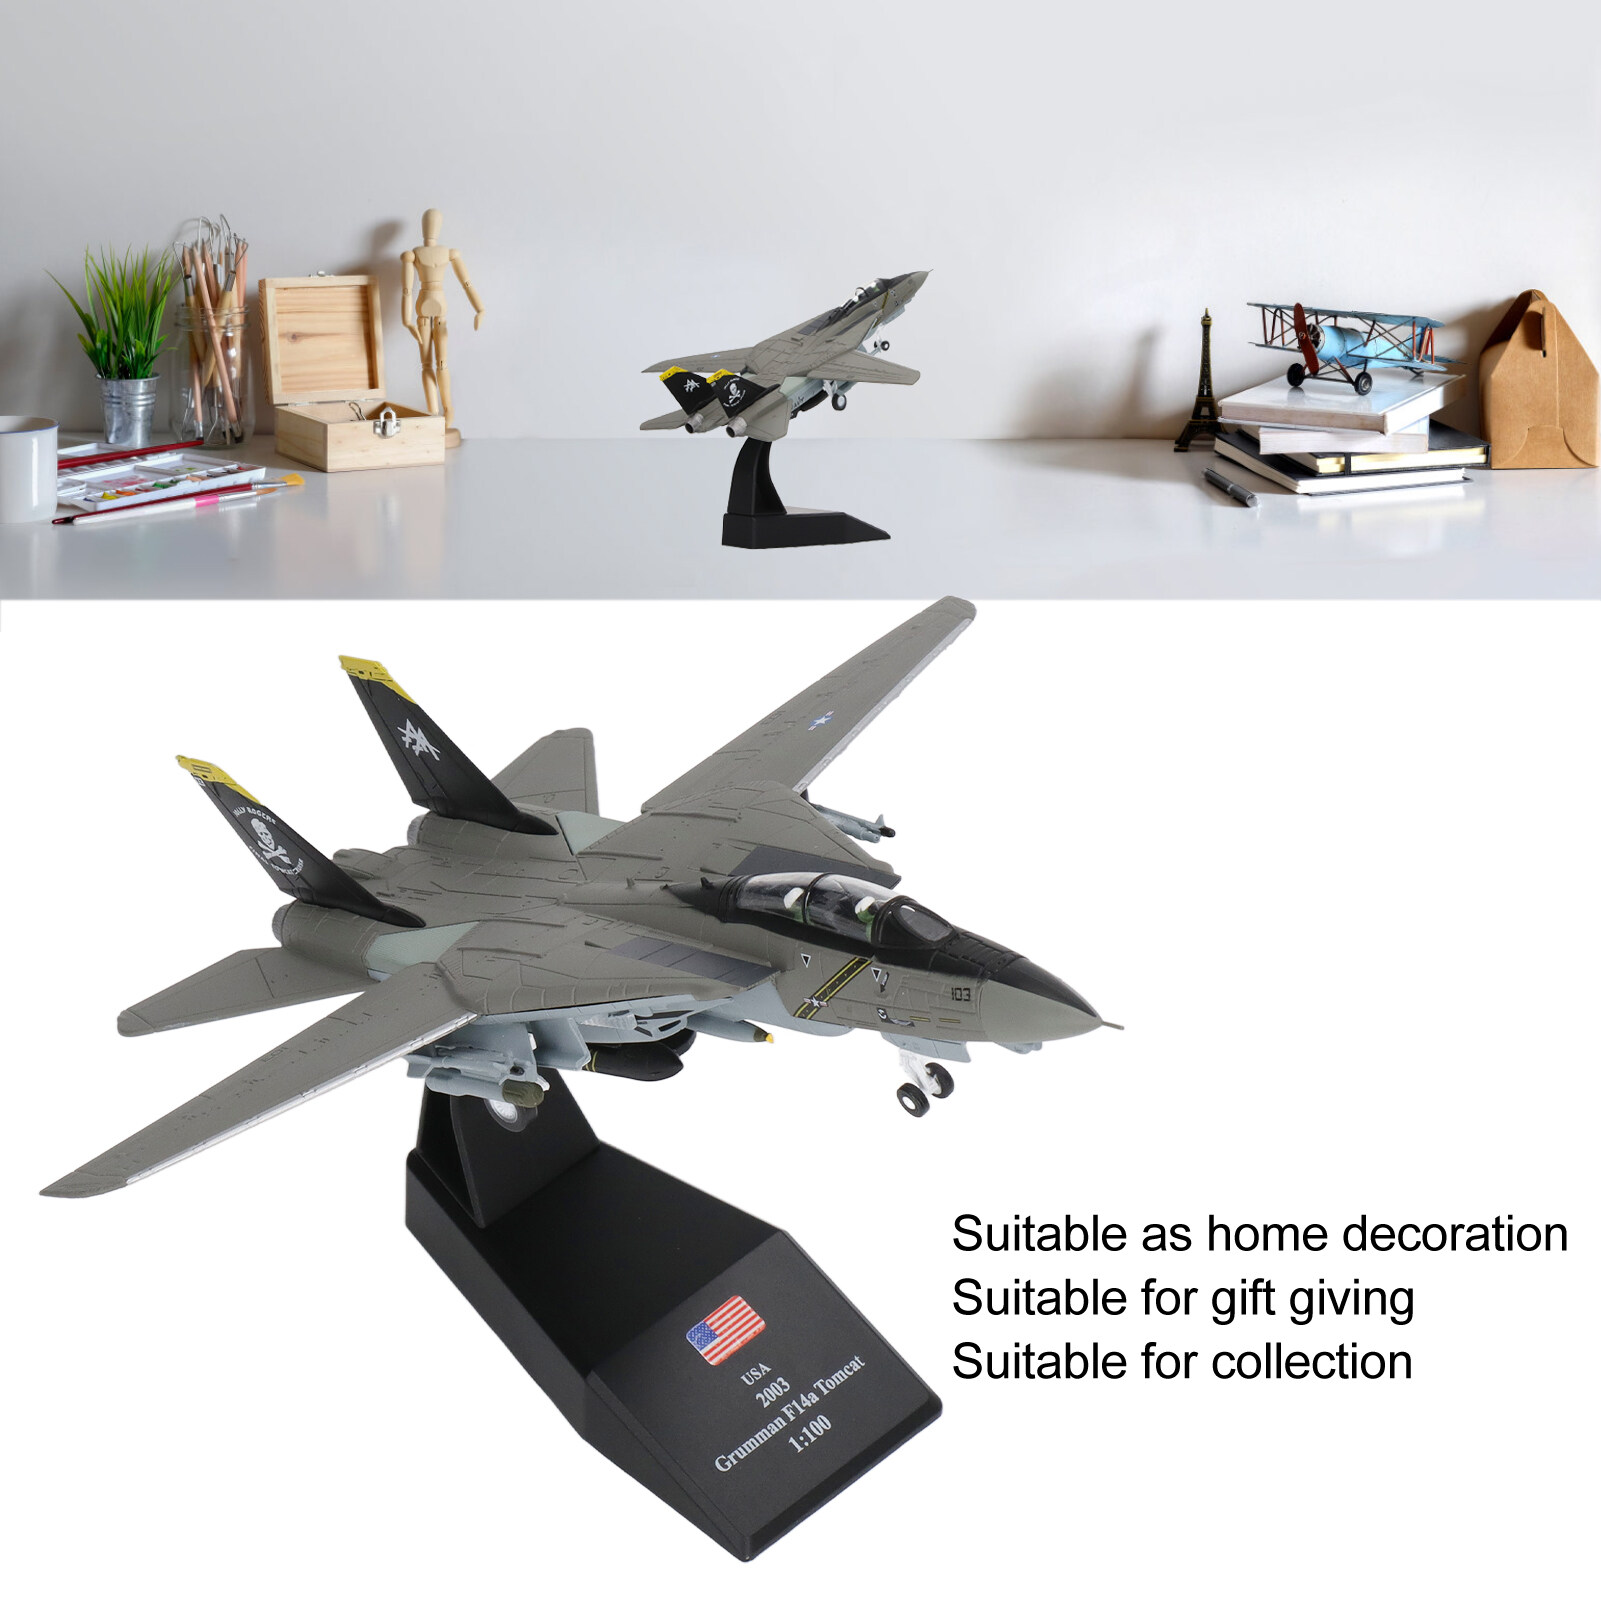 Mô hình móc chìa khoá hình máy bay chiến đấu rõ ràng mô hình máy bay chiến